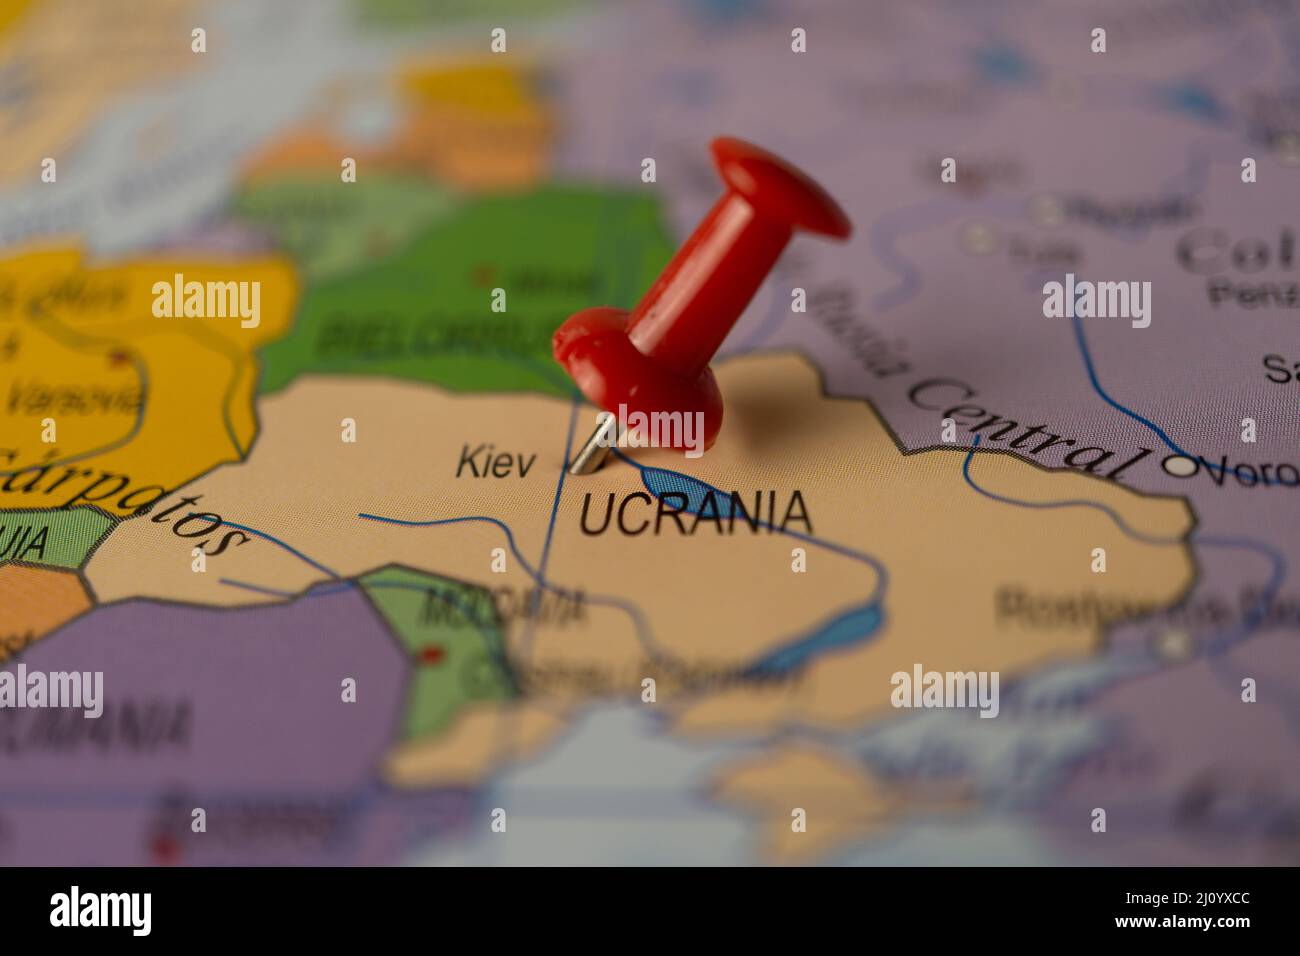 kiev,ucraina contrassegnato sulla mappa con un thumbtack Foto Stock